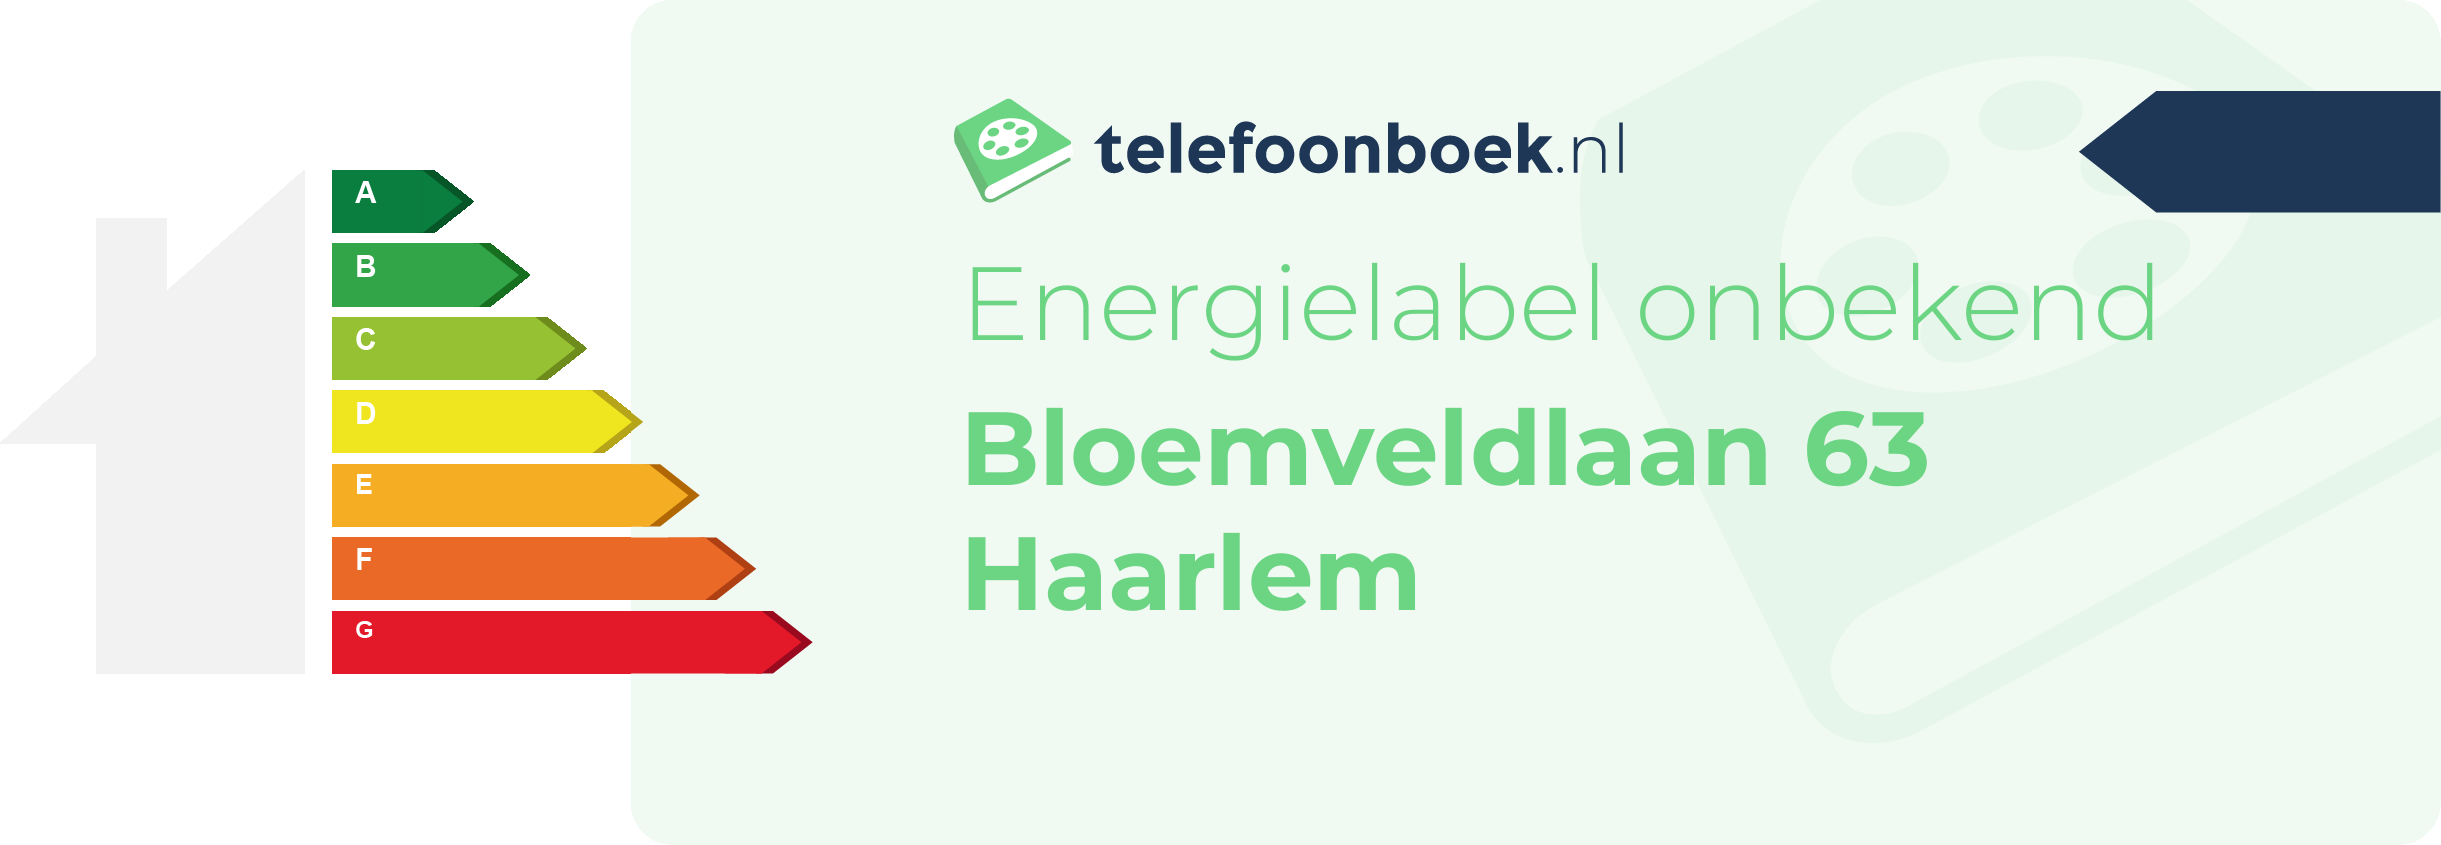 Energielabel Bloemveldlaan 63 Haarlem